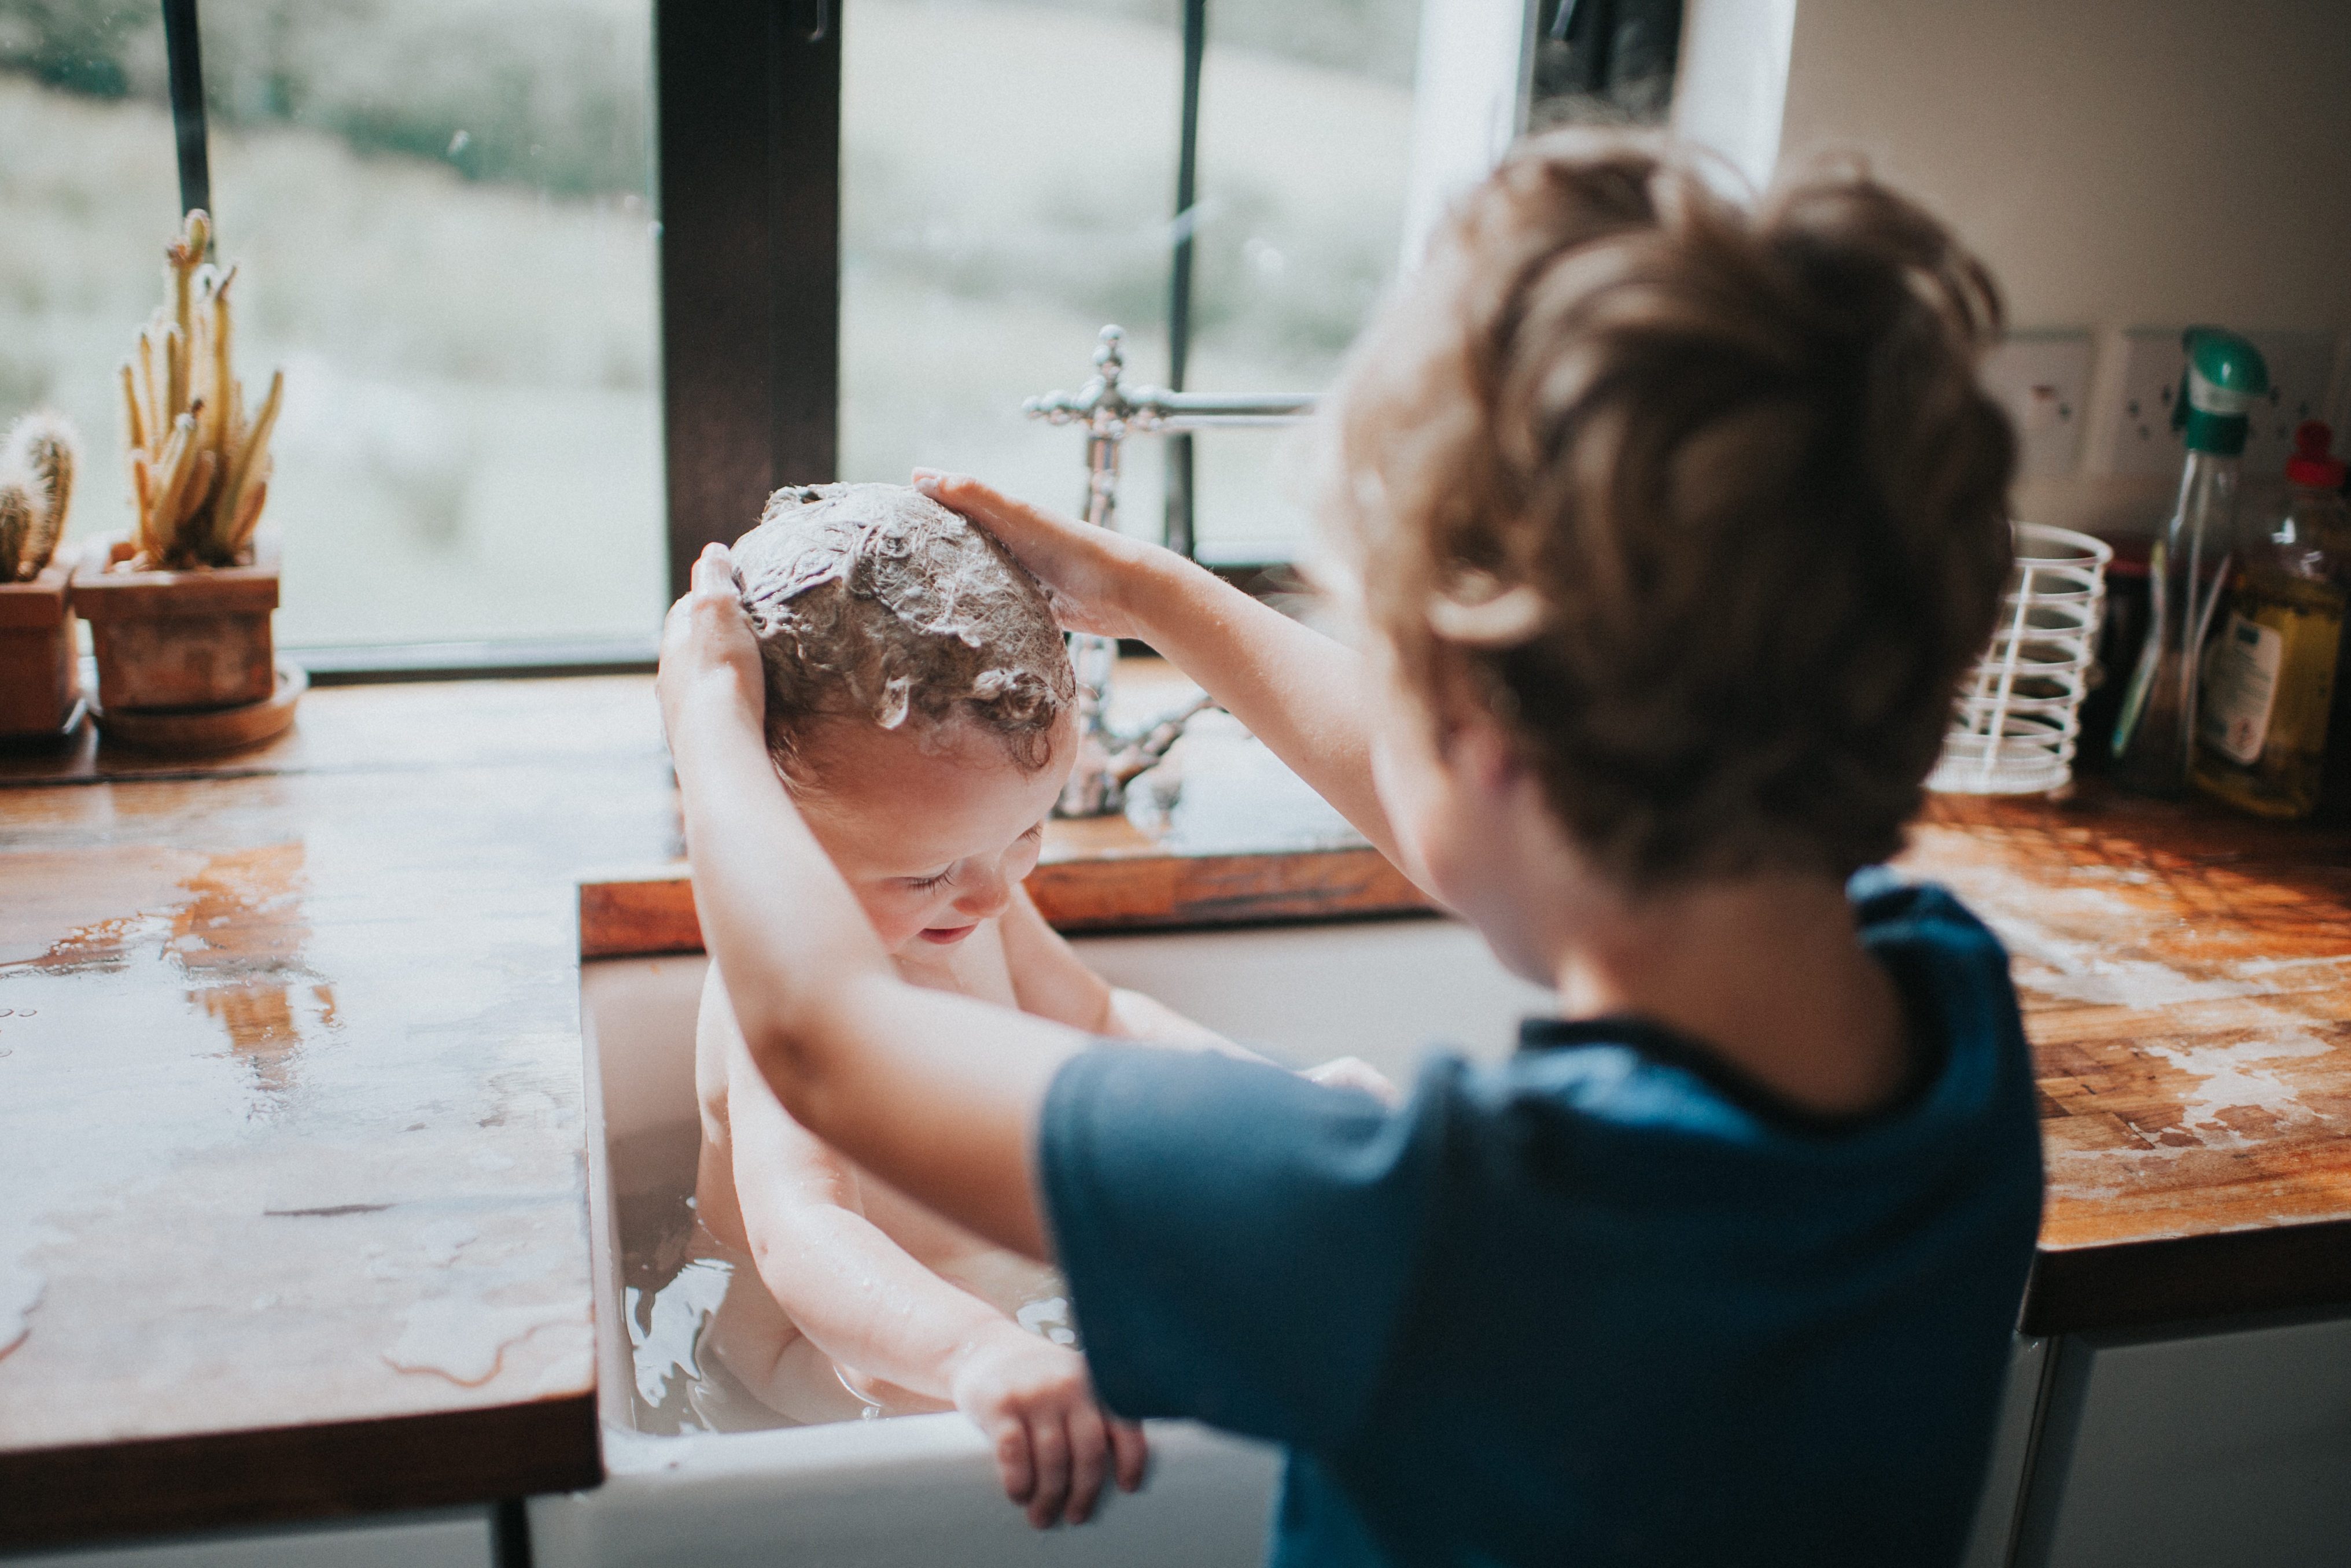 Big Brother washing sibling's hair